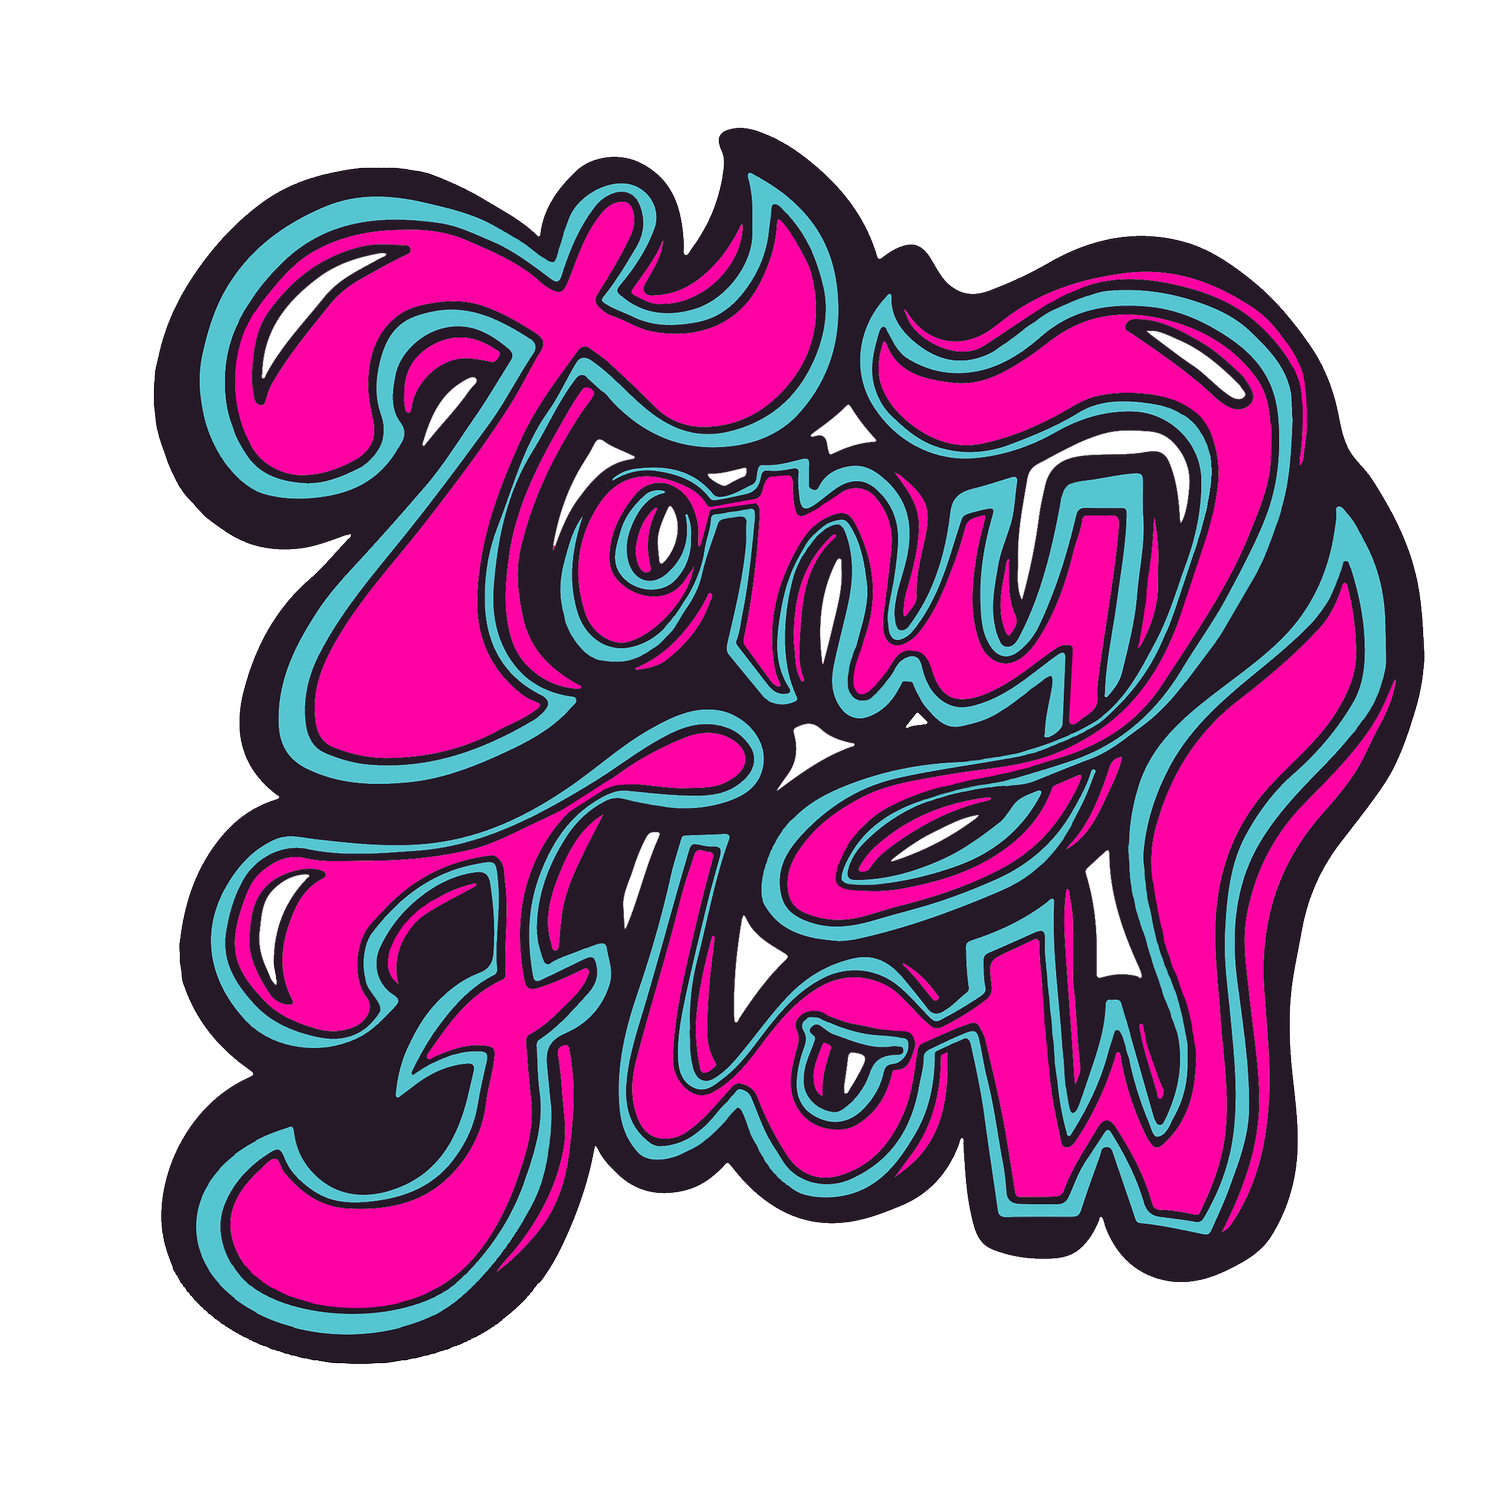 Tony Flow